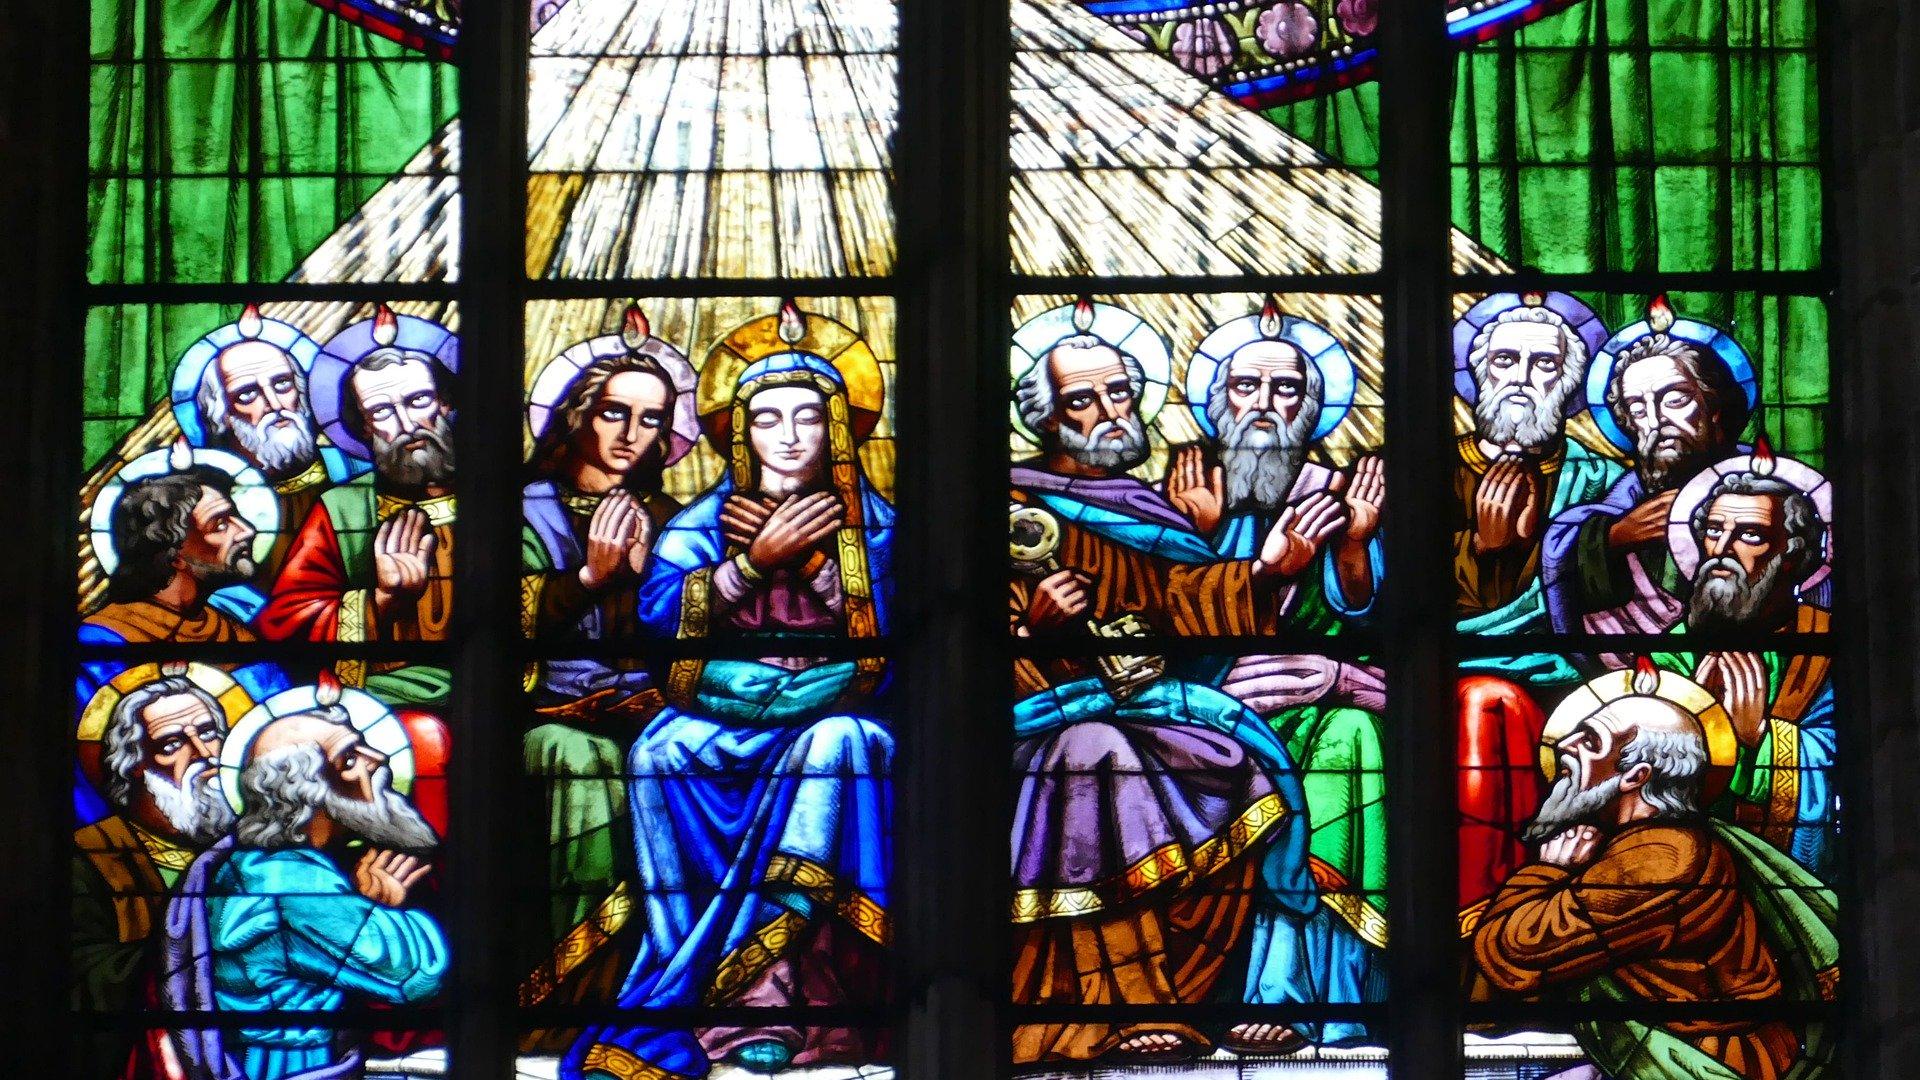 Pingstdarstellung in einem Glasfenster einer Kirche in Barcelona. (c) www.pixabay.com